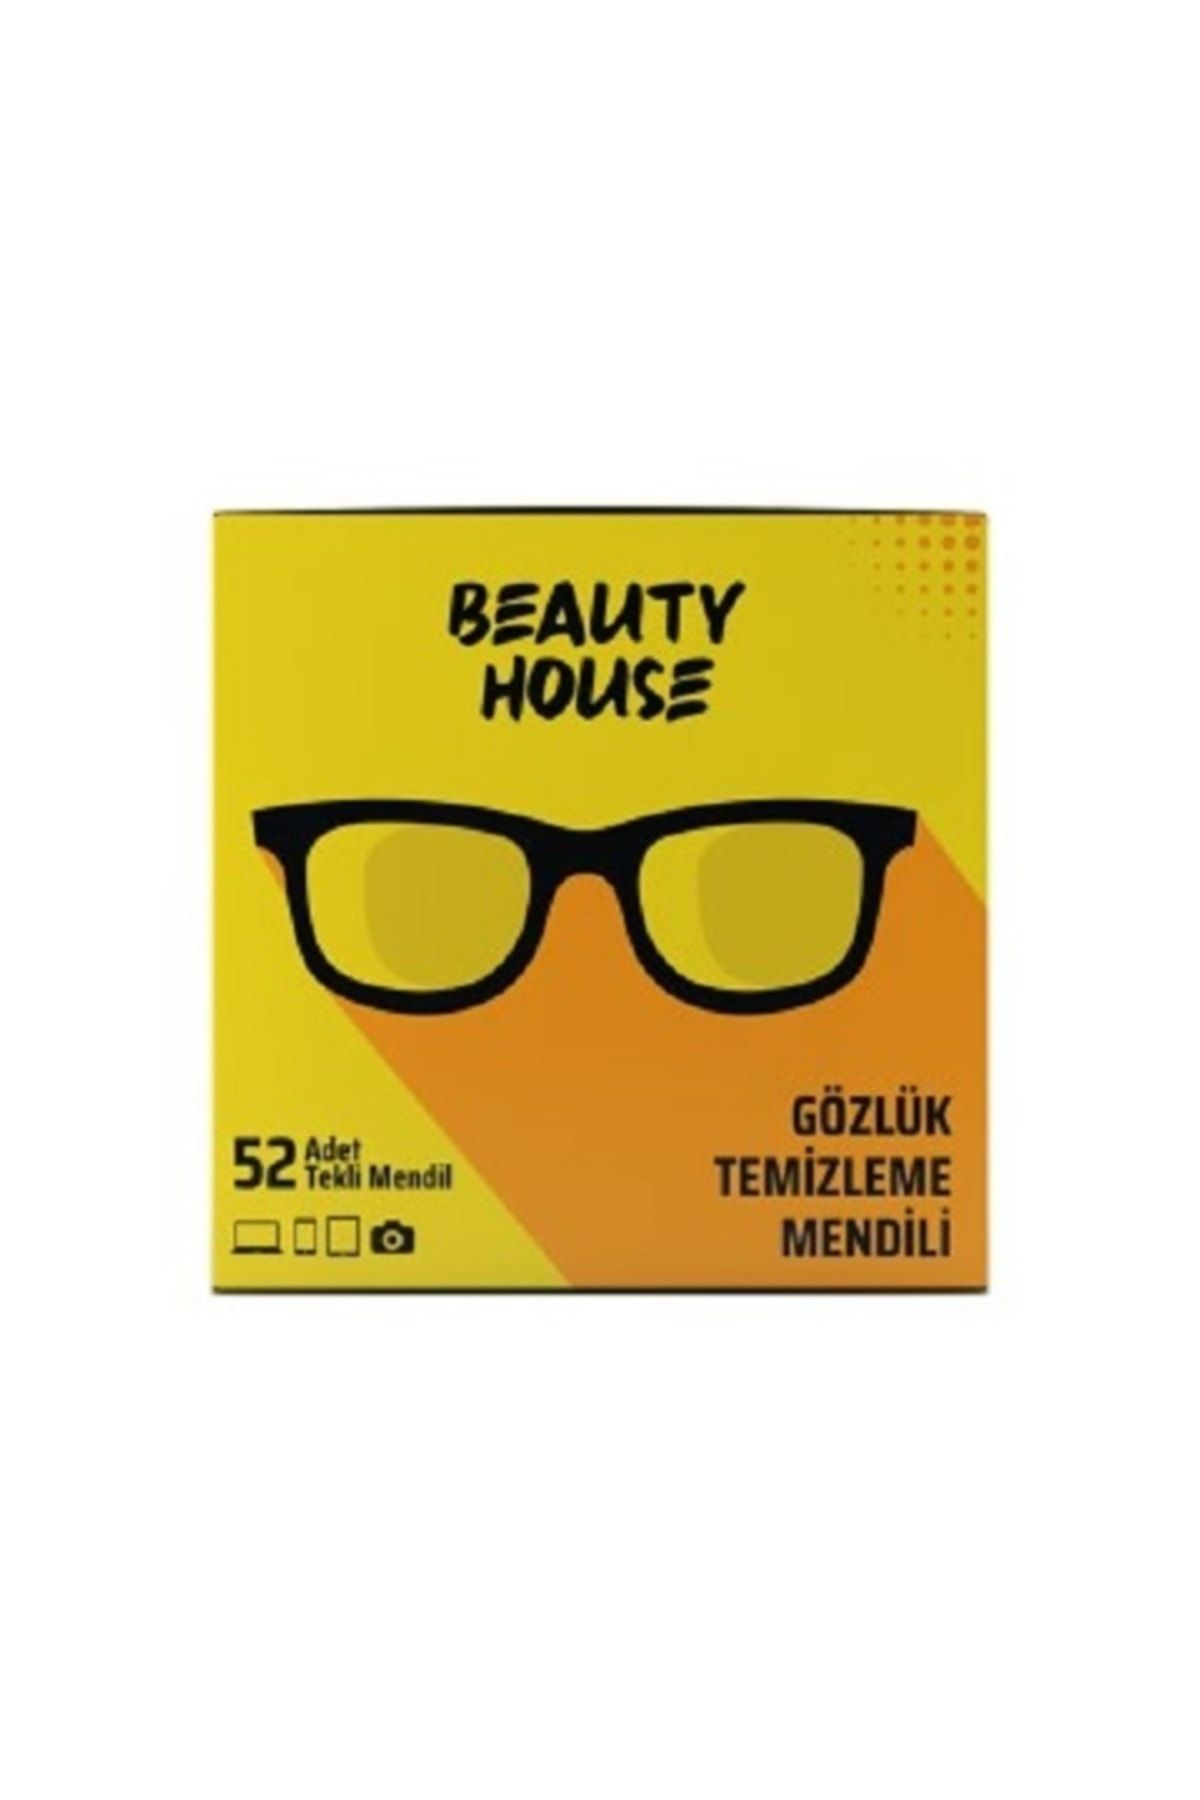 Beauty House Gözlük Temizleme Mendili 52'li